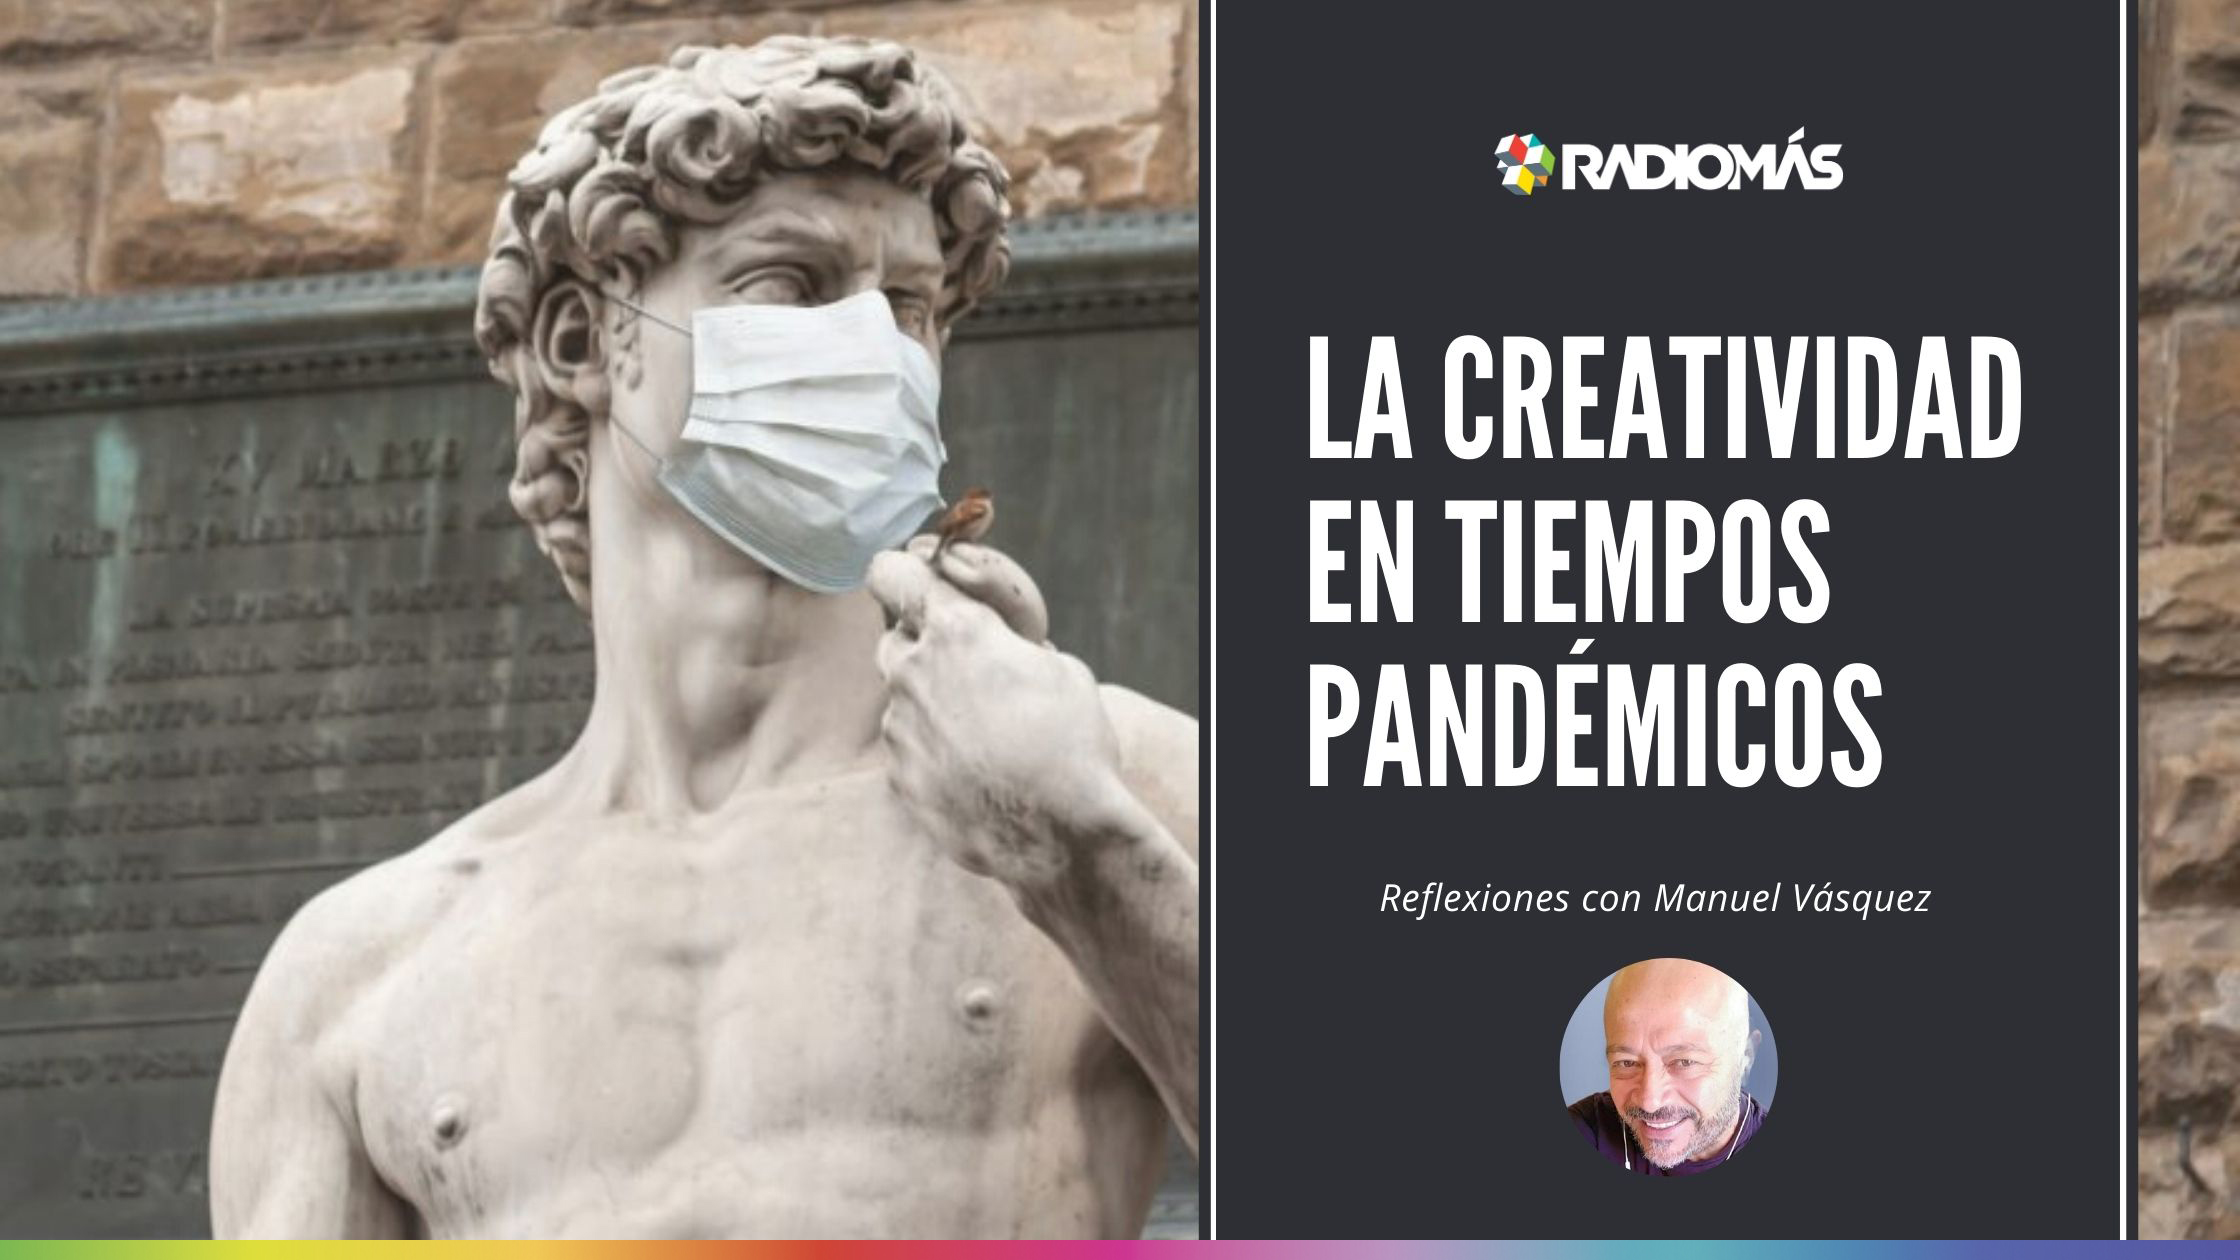 Estéticas en la pandemia. Reflexiones sobre la creatividad y la vida artística.